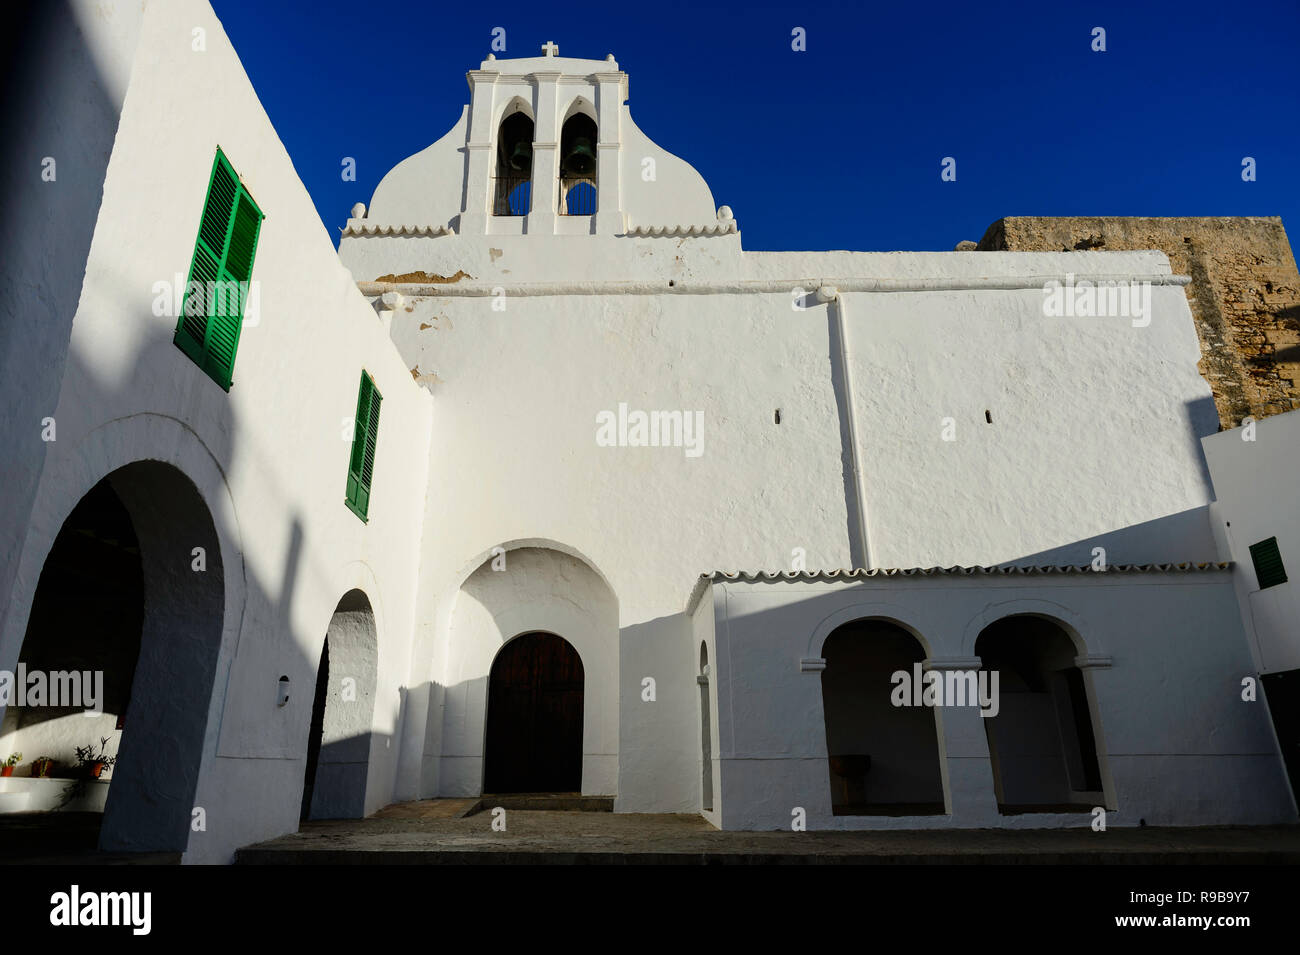 Sant Antoni de Portmany church, Ibiza Stock Photo